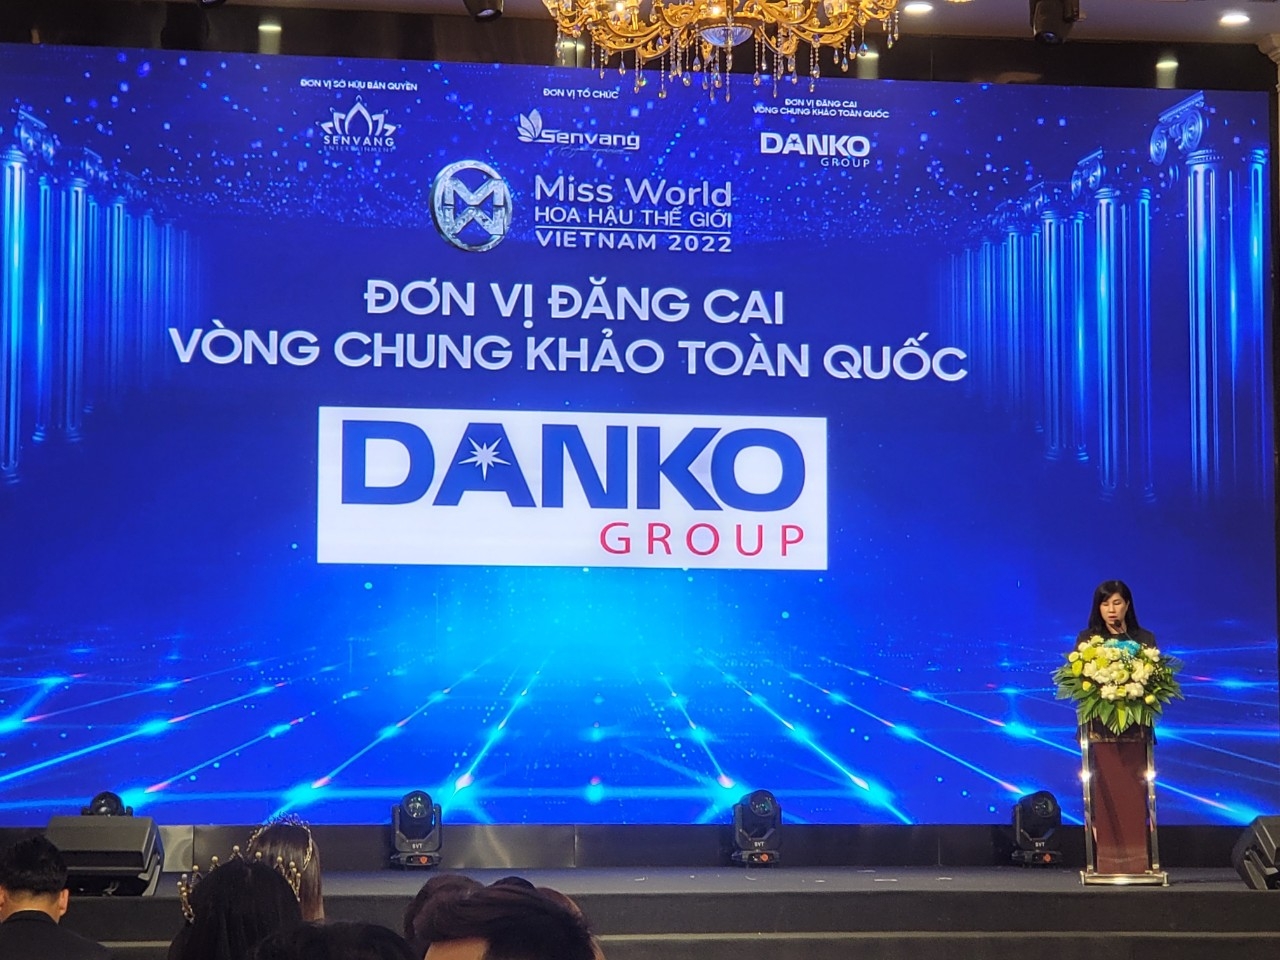 Chính thức khai mạc: Vòng chung khảo Toàn quốc Miss World Vietnam 2022 tại KĐT Danko City